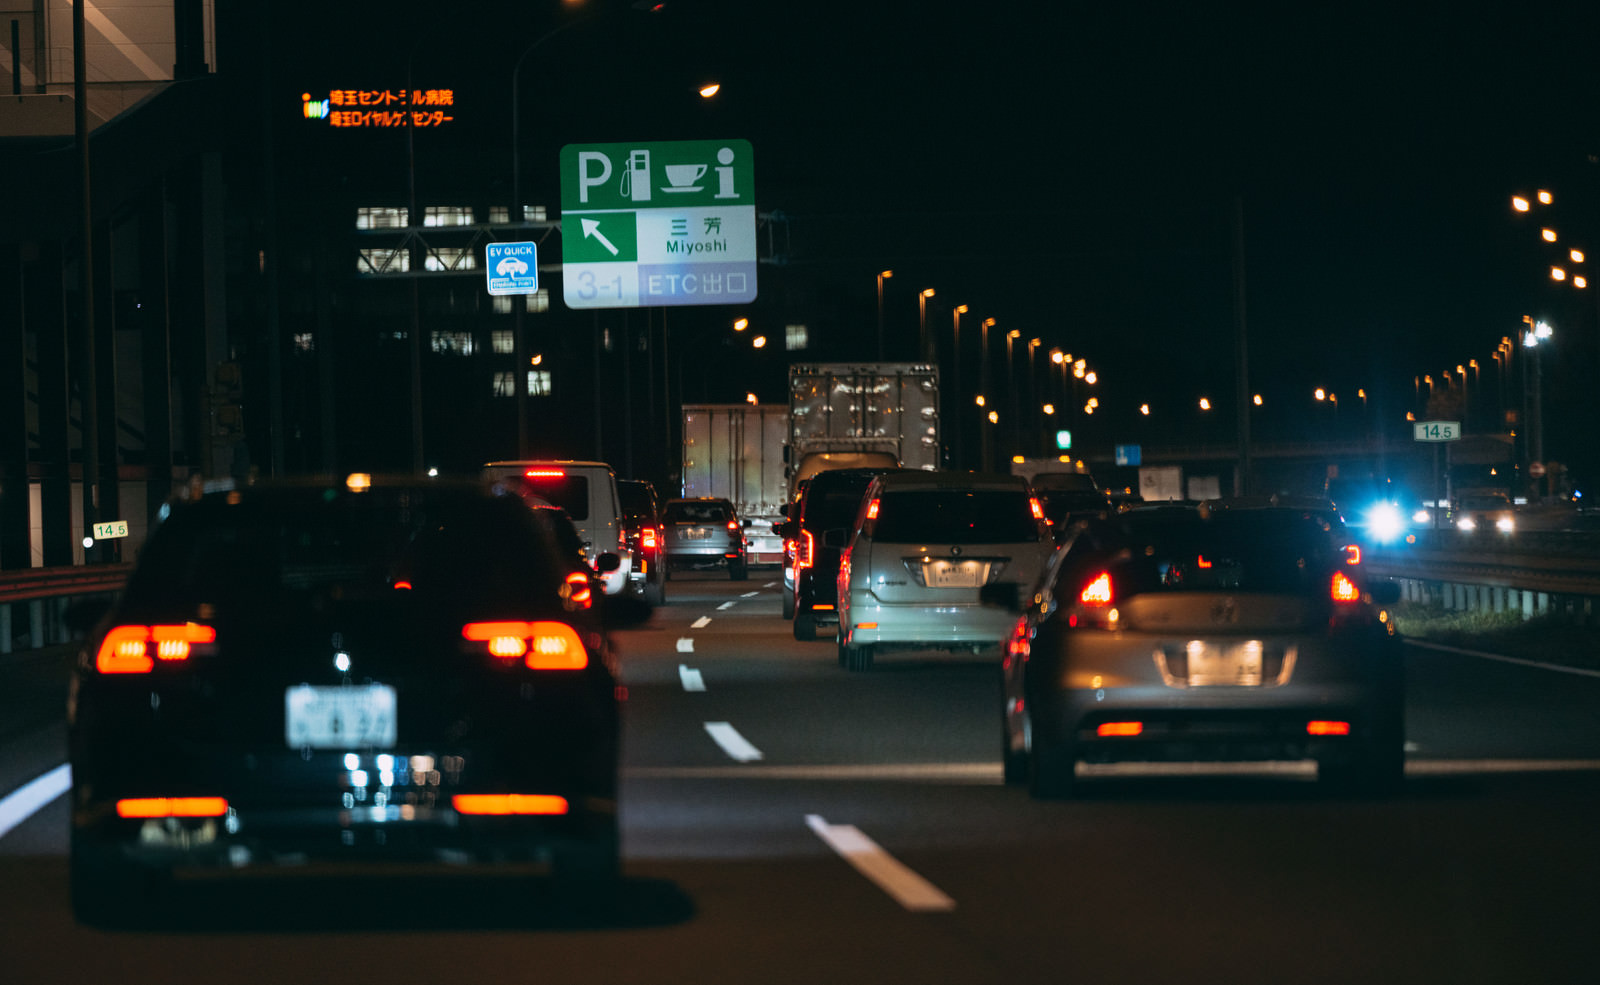 「高速道路の等間隔に光るテールランプ | フリー素材のぱくたそ」の写真